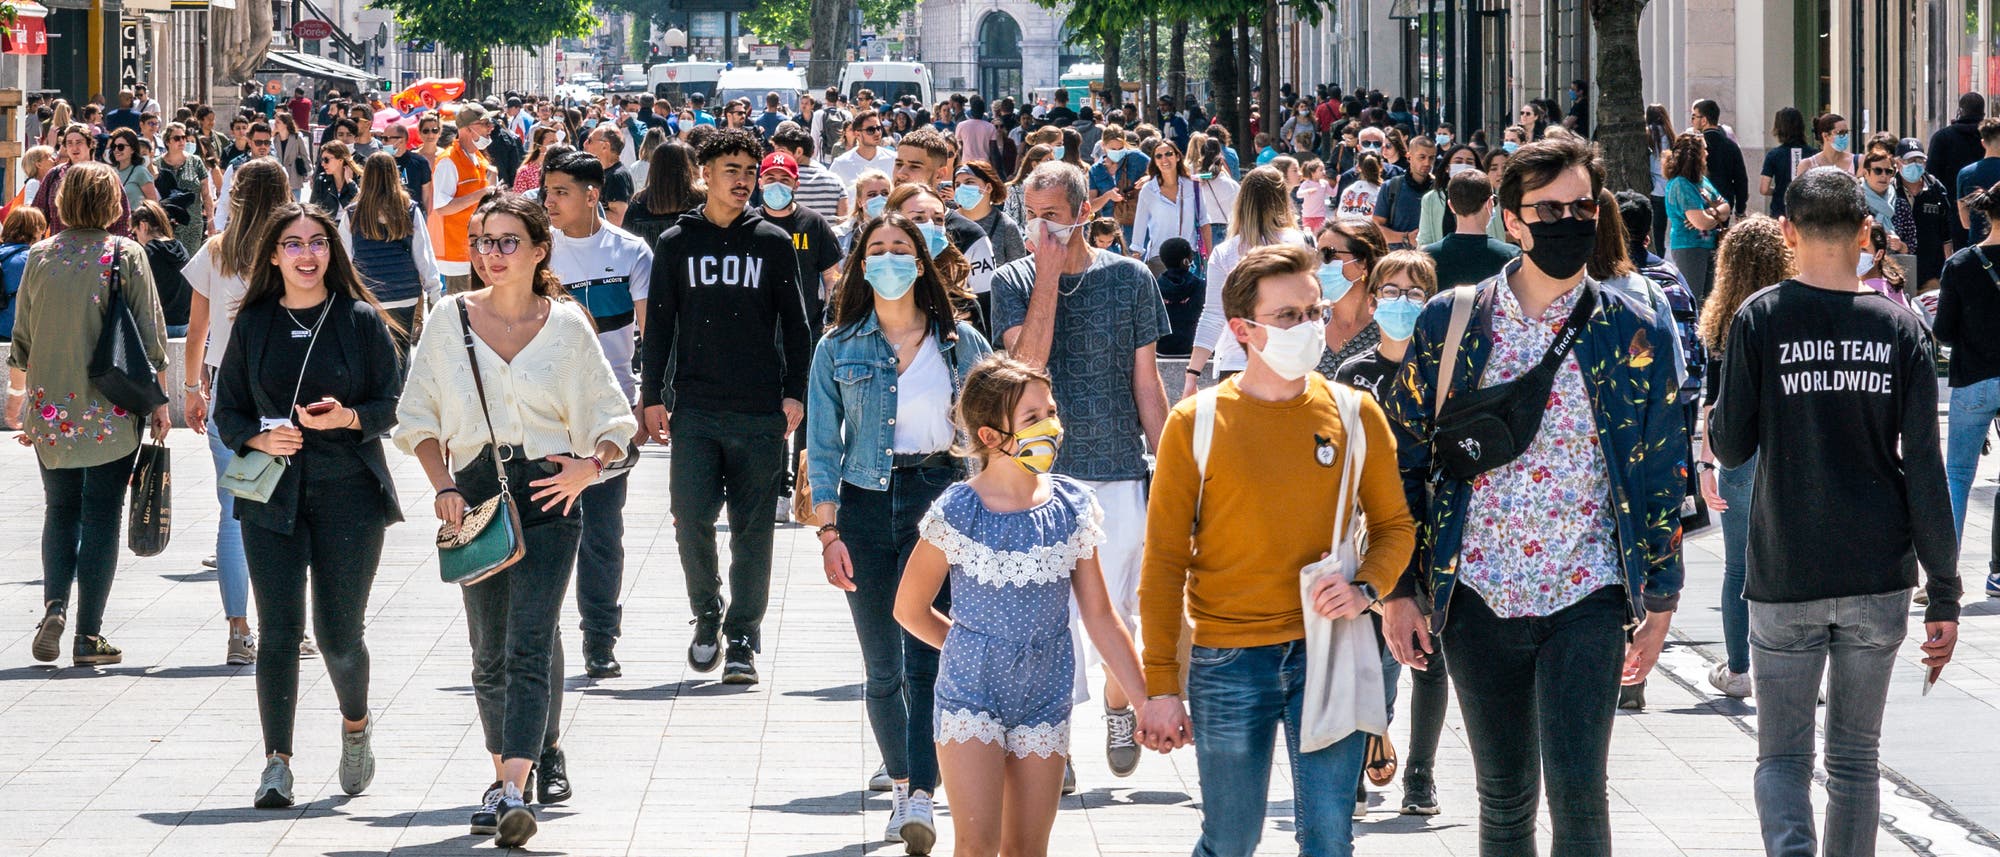 Eine Menschenmenge in einer Einkaufsstraße, zum Teil mit, zum Teil ohne Maske. Aufgenommen in Frankreich nach dem Ende des Lockdowns.